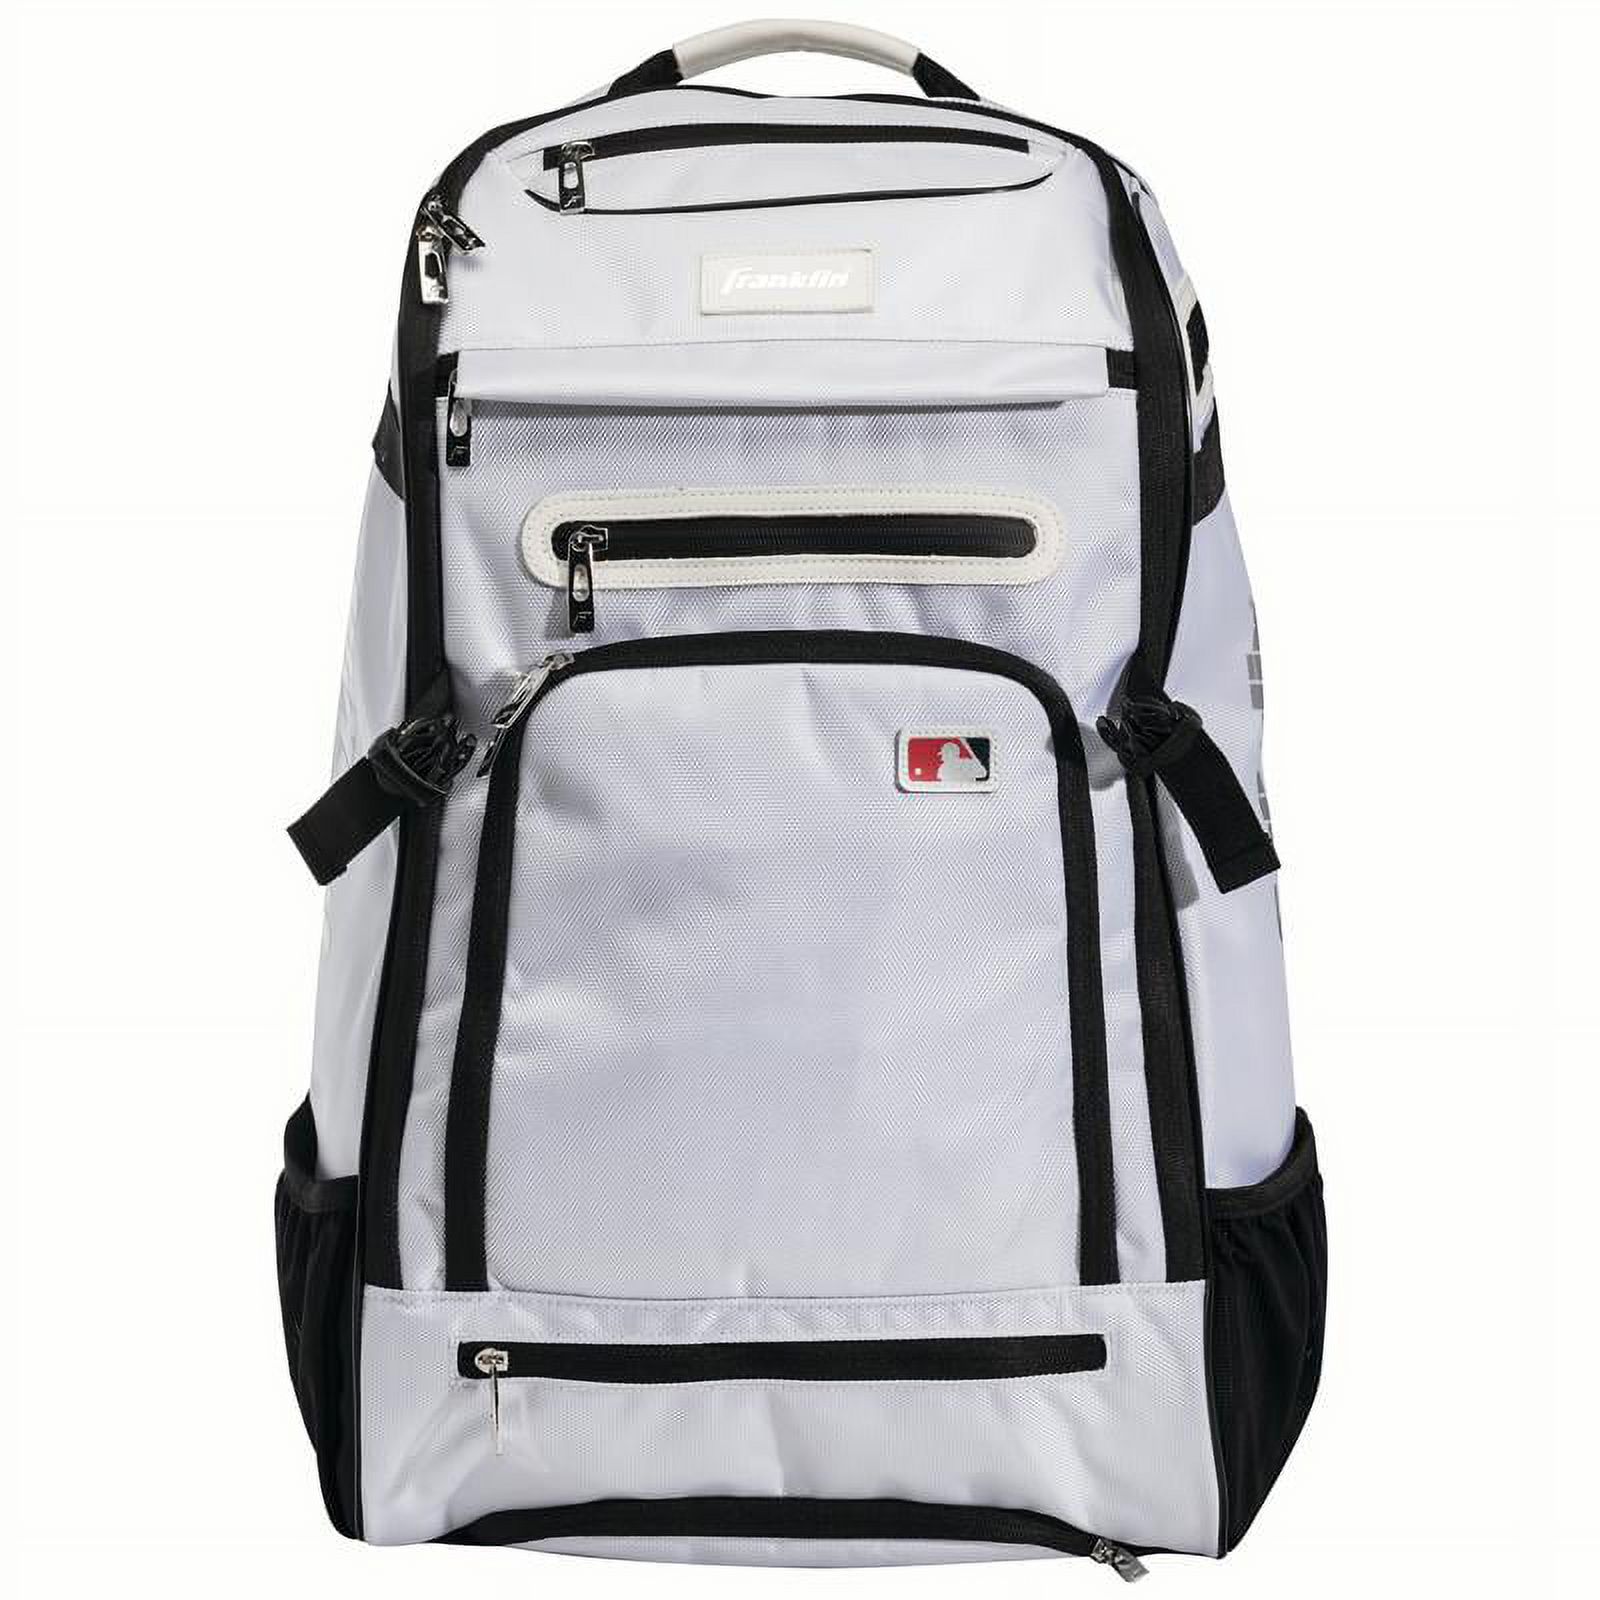 Franklin Sports MLB Traveler Elite Baseball Backpack ? Baseball Bag or Softball Backpack ? White - image 1 of 6